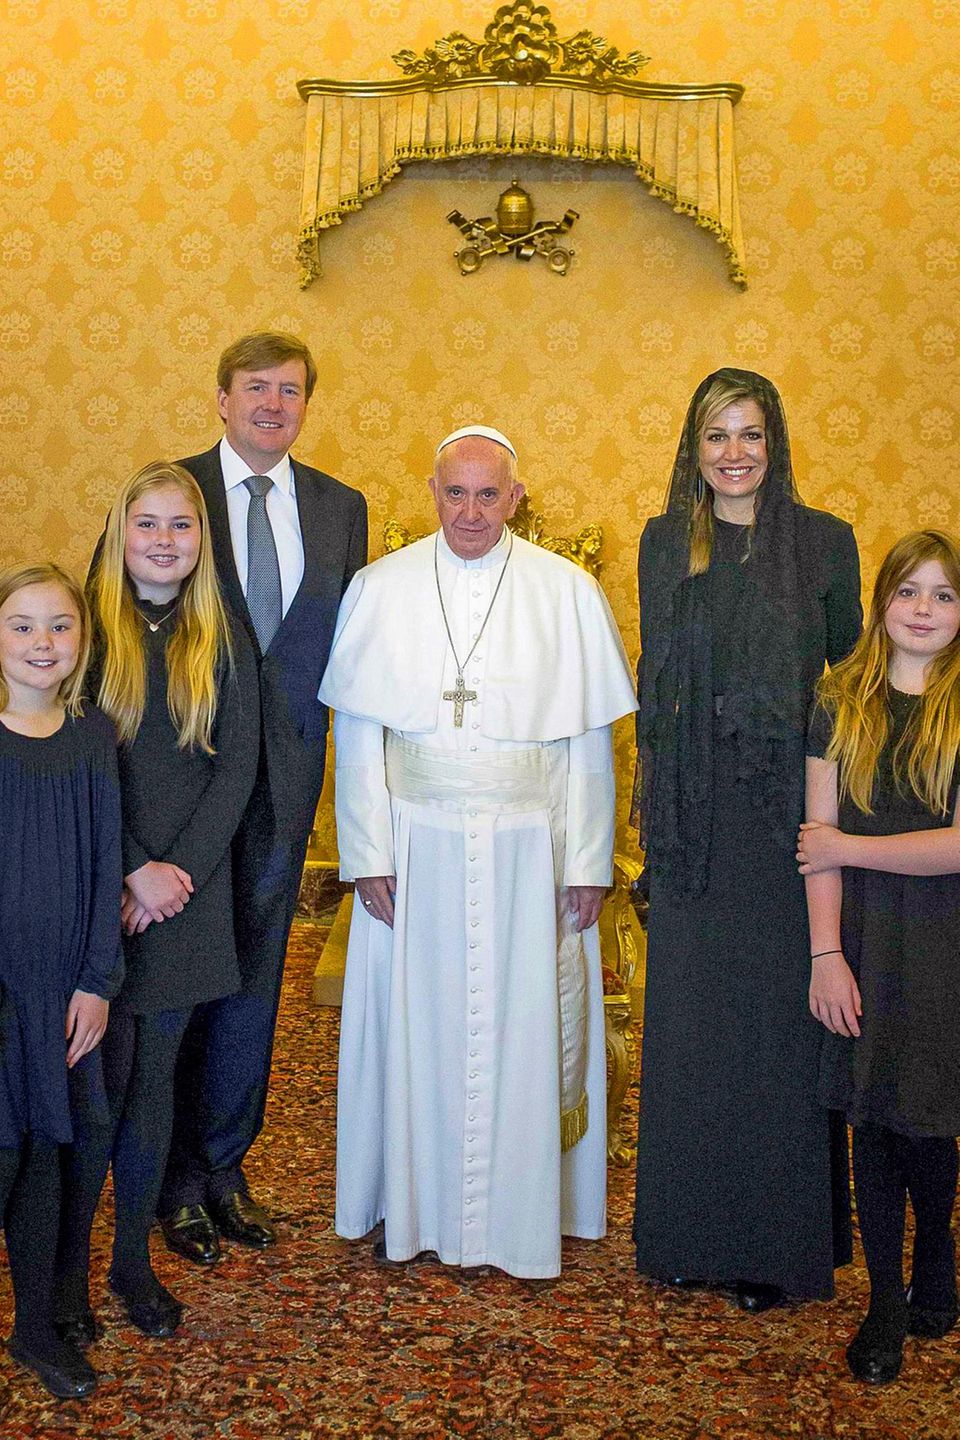 25. April 2016  König Willem-Alexander und Königin Máxima sind mit ihren drei Töchtern Ariane, Amalia und Alexia im Vatikan zu Besuch. Bei einer 15-minütigen Privataudienz treffen sie Papst Franziskus, der wie Mama Máxima aus Argentinien stammt.